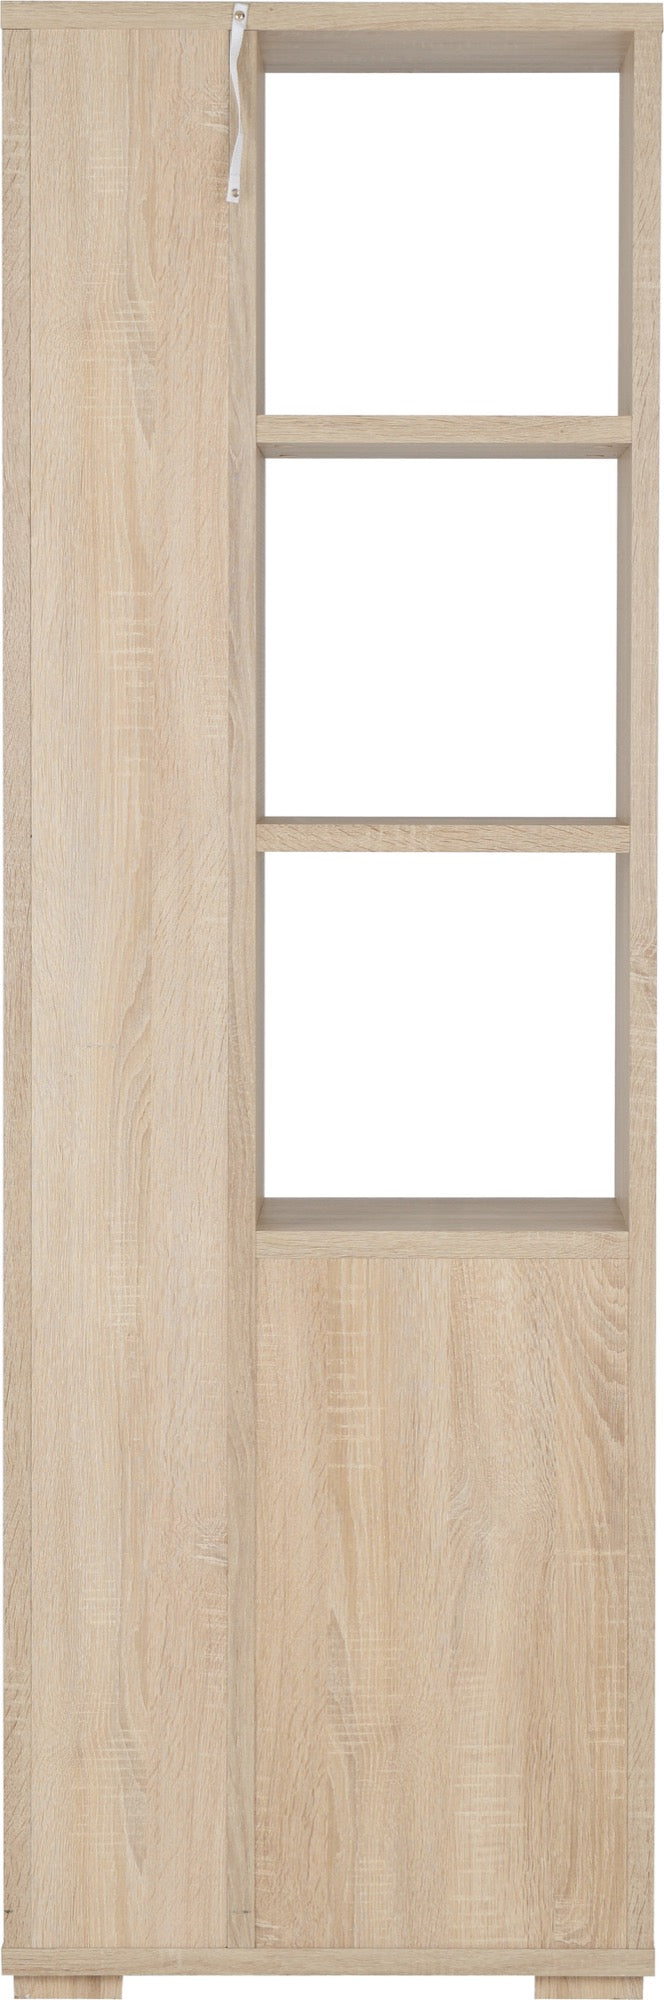 Cambourne 1 Door 5 Shelf Unit- Sonoma Oak Effect Veneer- The Right Buy Store